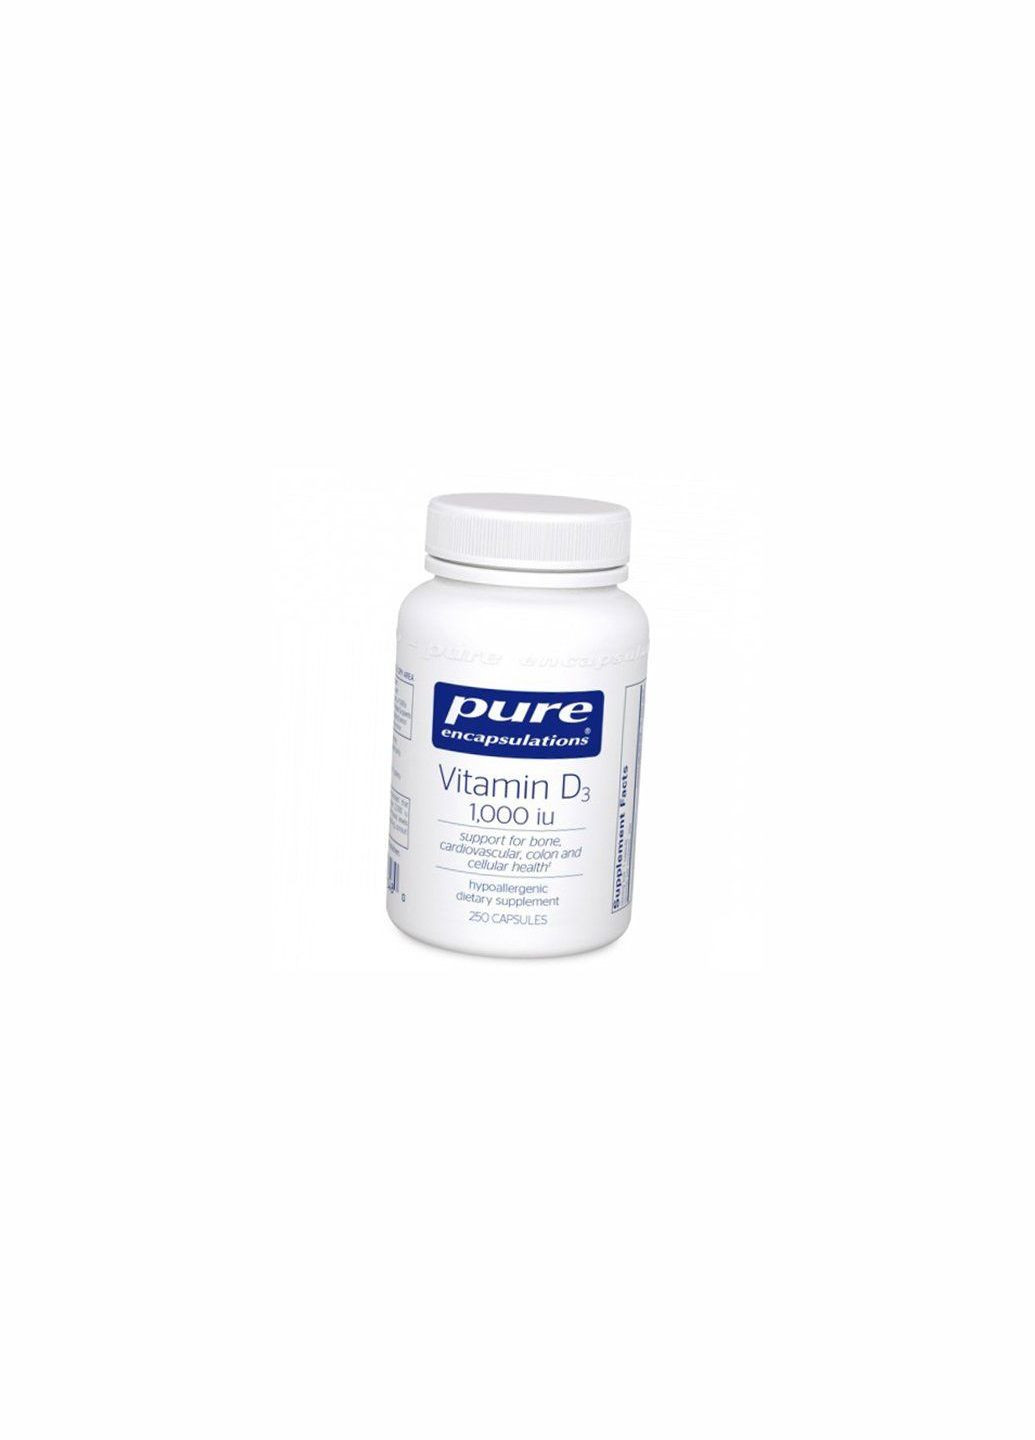 Витамин Д3, Vitamin D3 1000, 250капс (36361062) Pure Encapsulations (293254068)